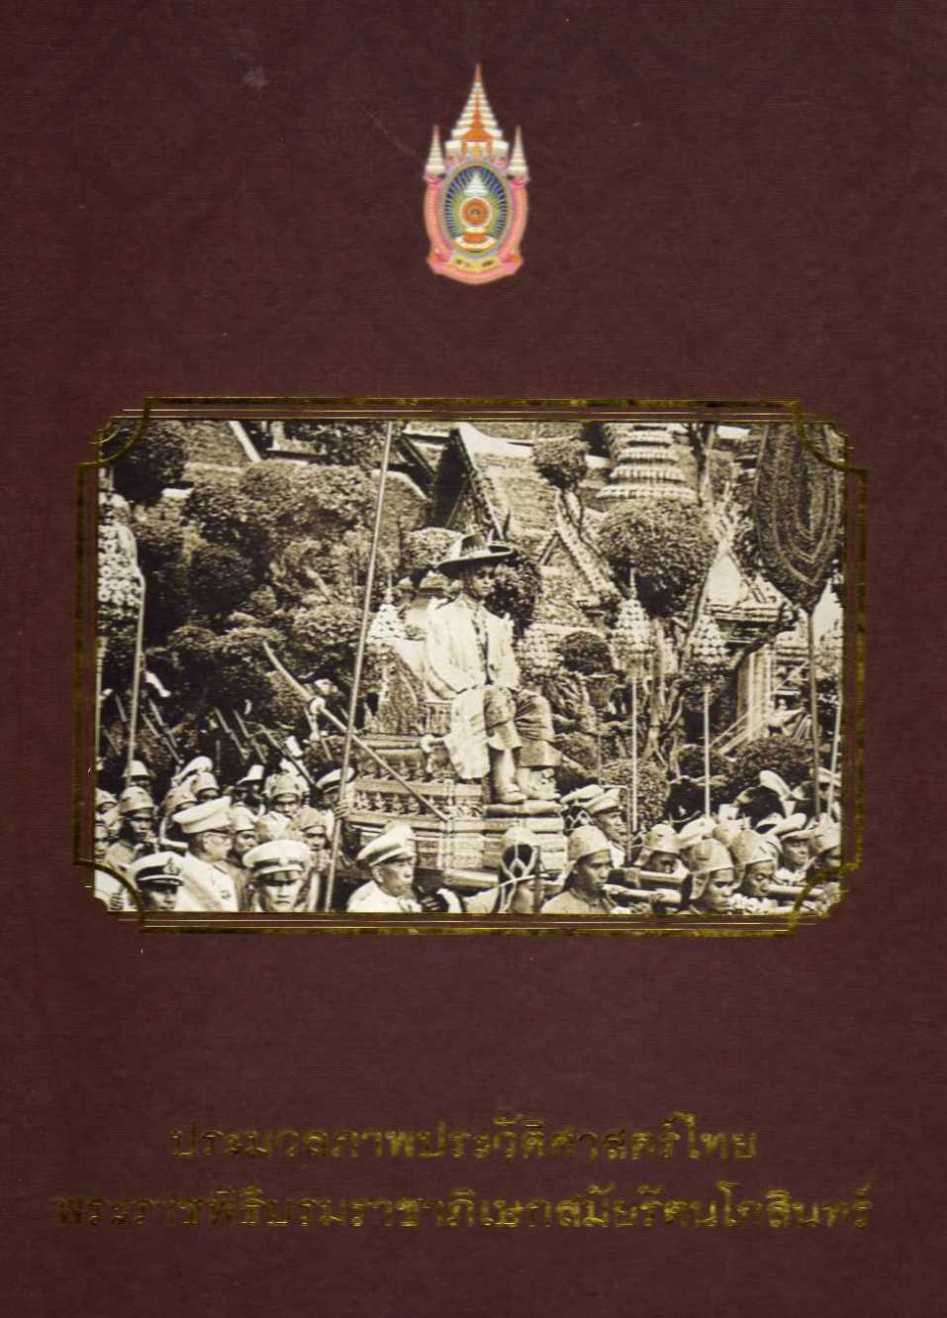 ประมวลภาพประวัติศาสตร์ไทย พระราชพิธีบรมราชาภิเษกสมัยรัตนโกสินทร์ 0